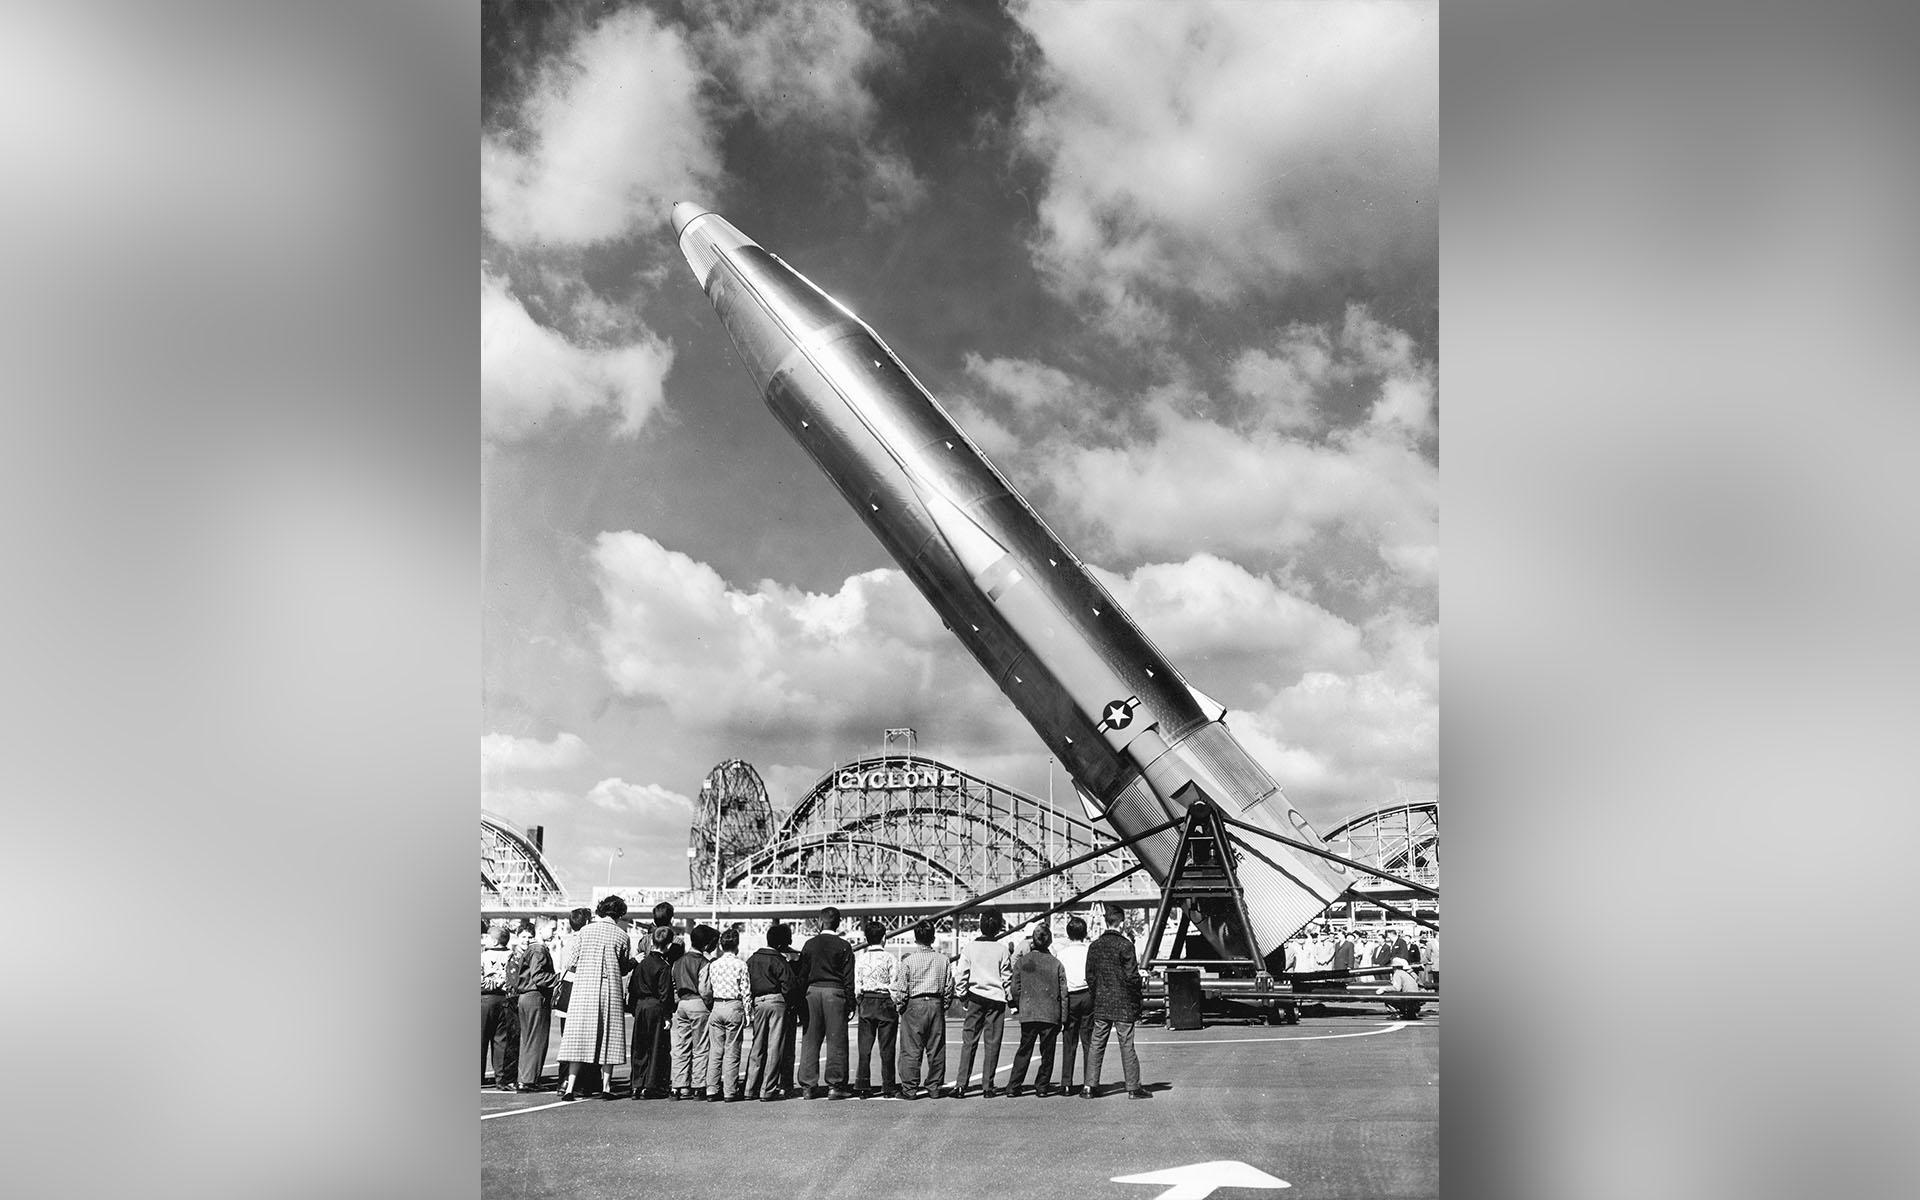 En grupp barn tittar på en interkontinental ballistisk missil vid nöjesfältet Coney Island i New York, 1959. Kärnvapen är lika fantasieggande som fruktansvärda. Foto: Hulton Archive/Getty Images